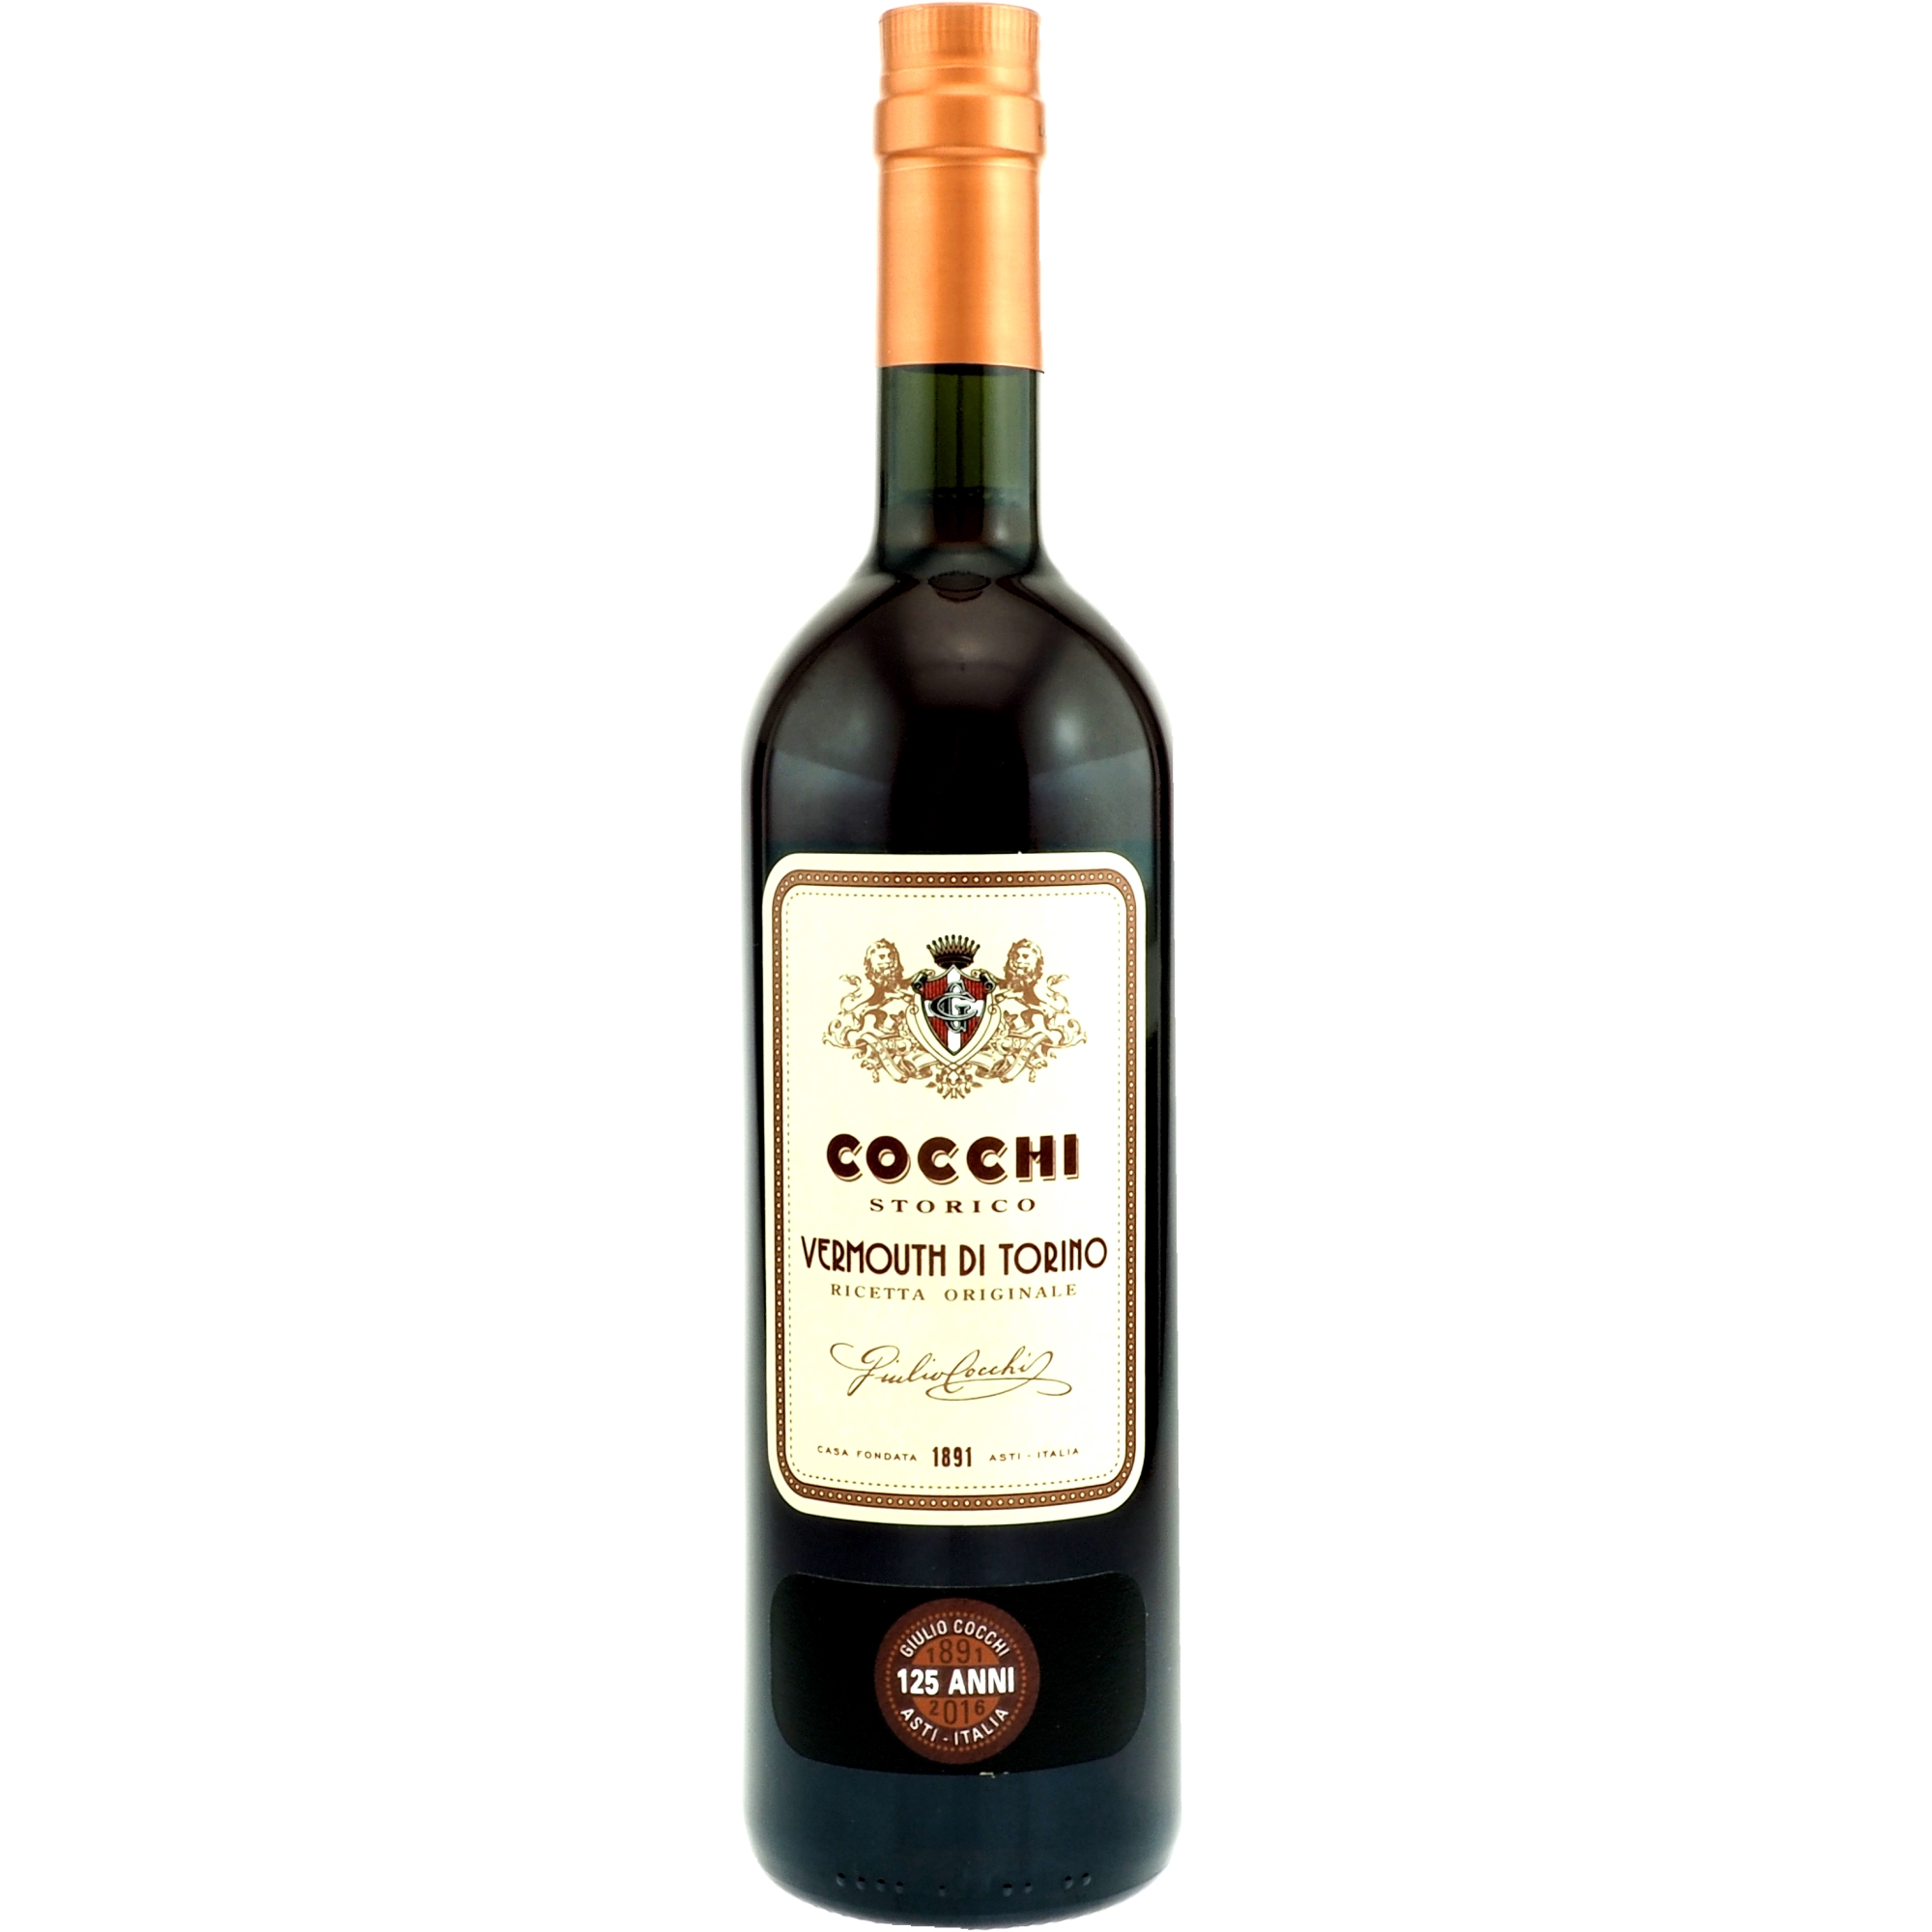 Cocchi - Vermouth di Torino | Vermouth Rot | Vermouth ...